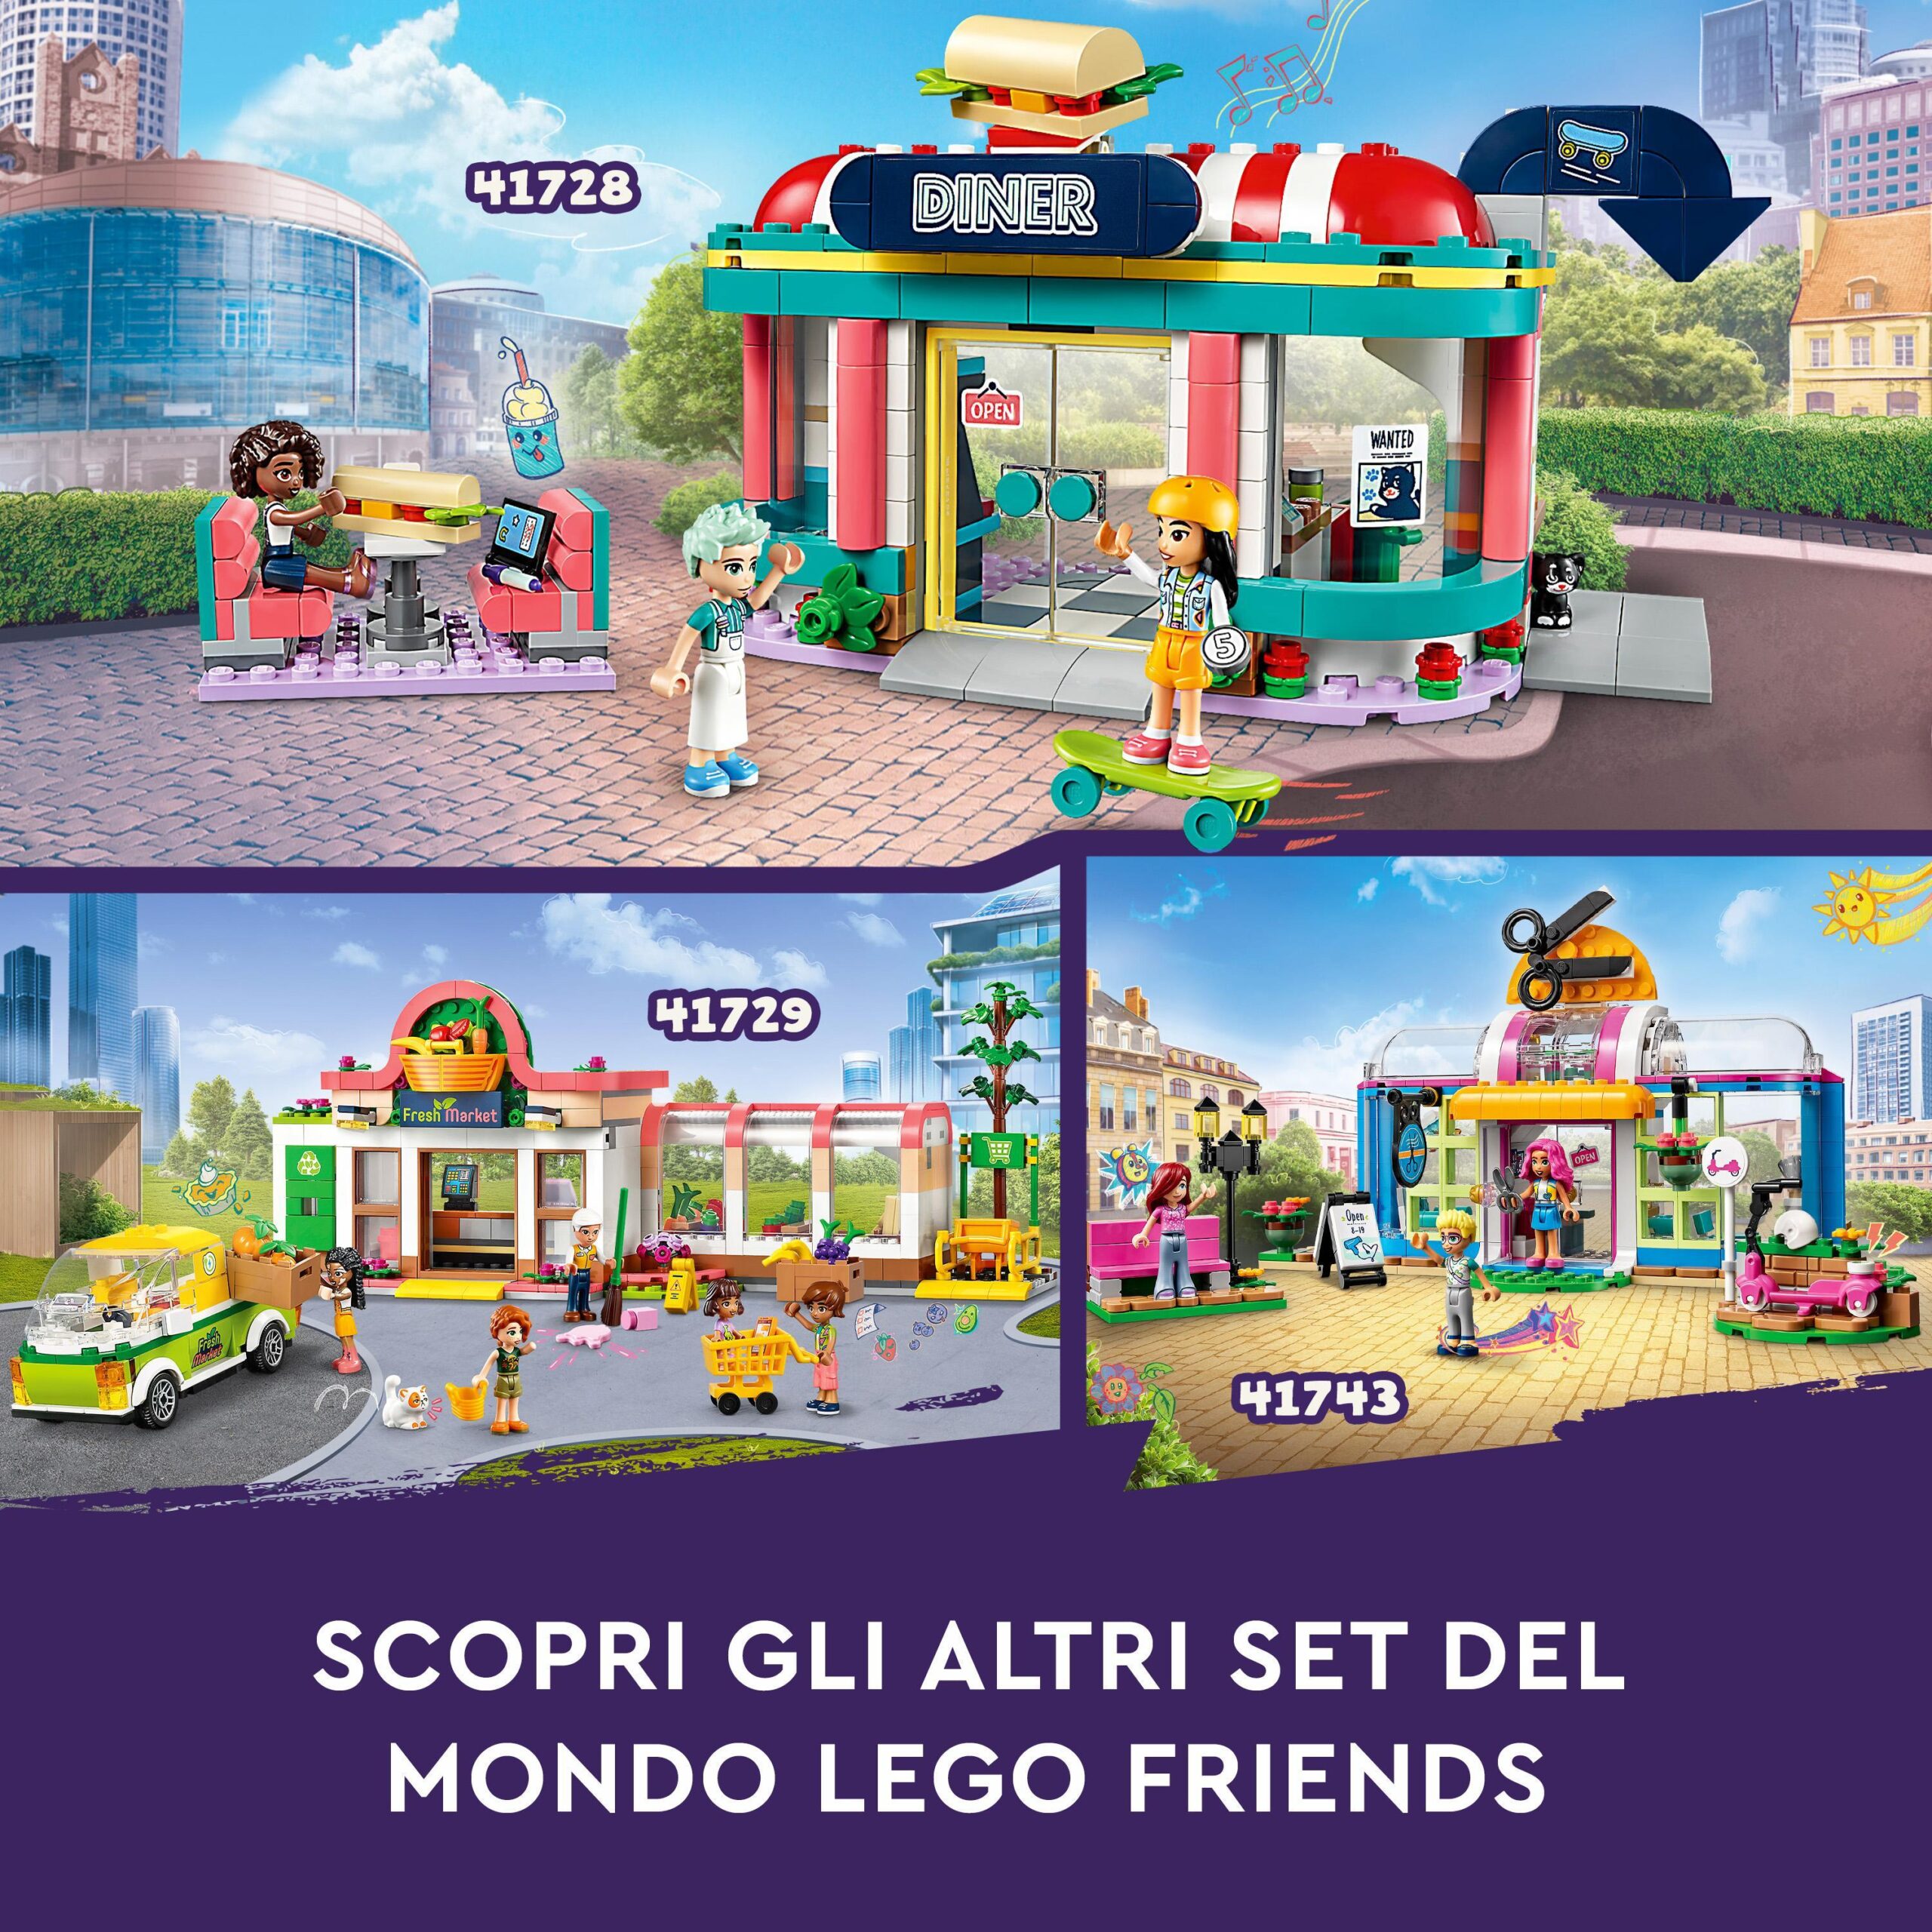 Lego friends 41728 ristorante nel centro di heartlake city, giochi per bambini 6+ anni, mini bamboline liann, aliya e charli - LEGO FRIENDS